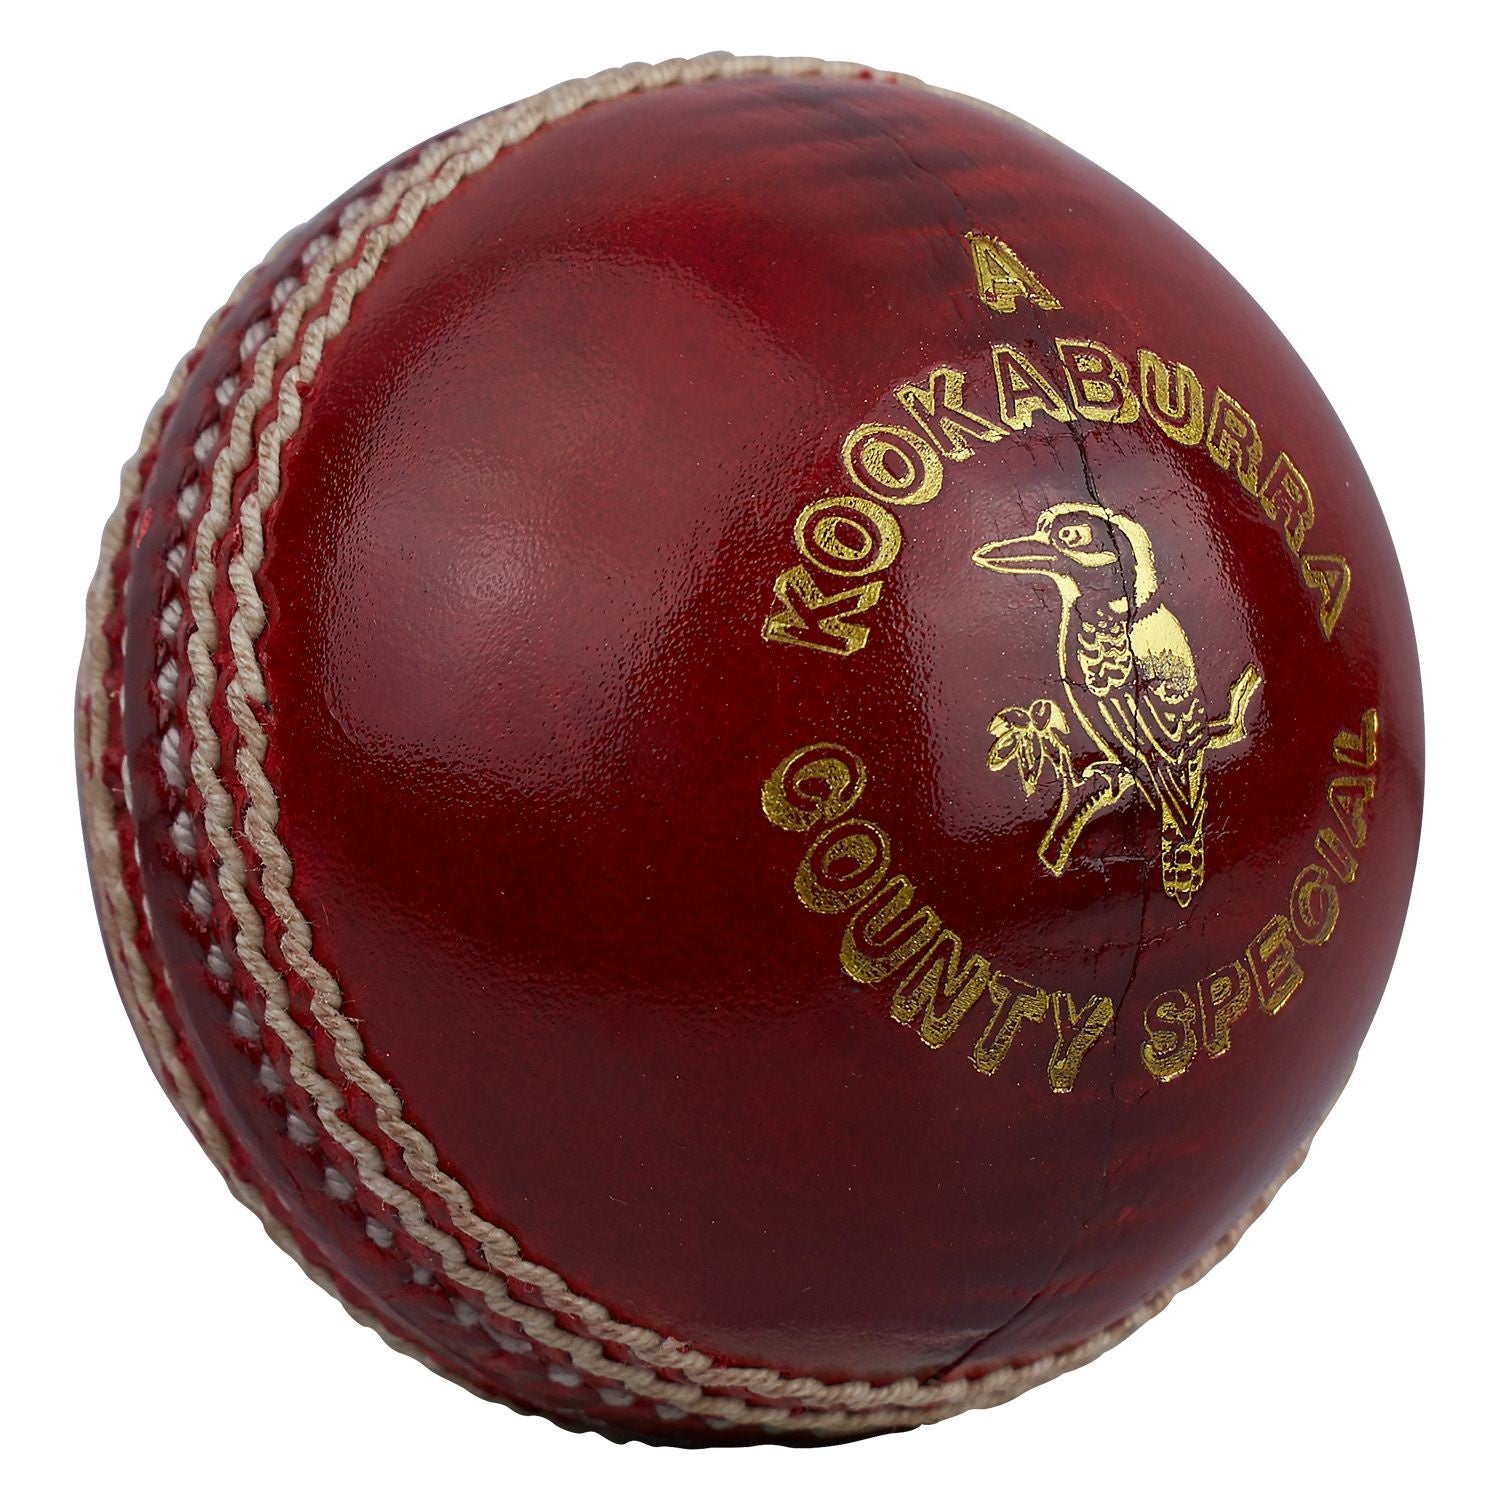 Kookaburra Kb County League Red Cricket Ball-Bruntsfield Sports Online